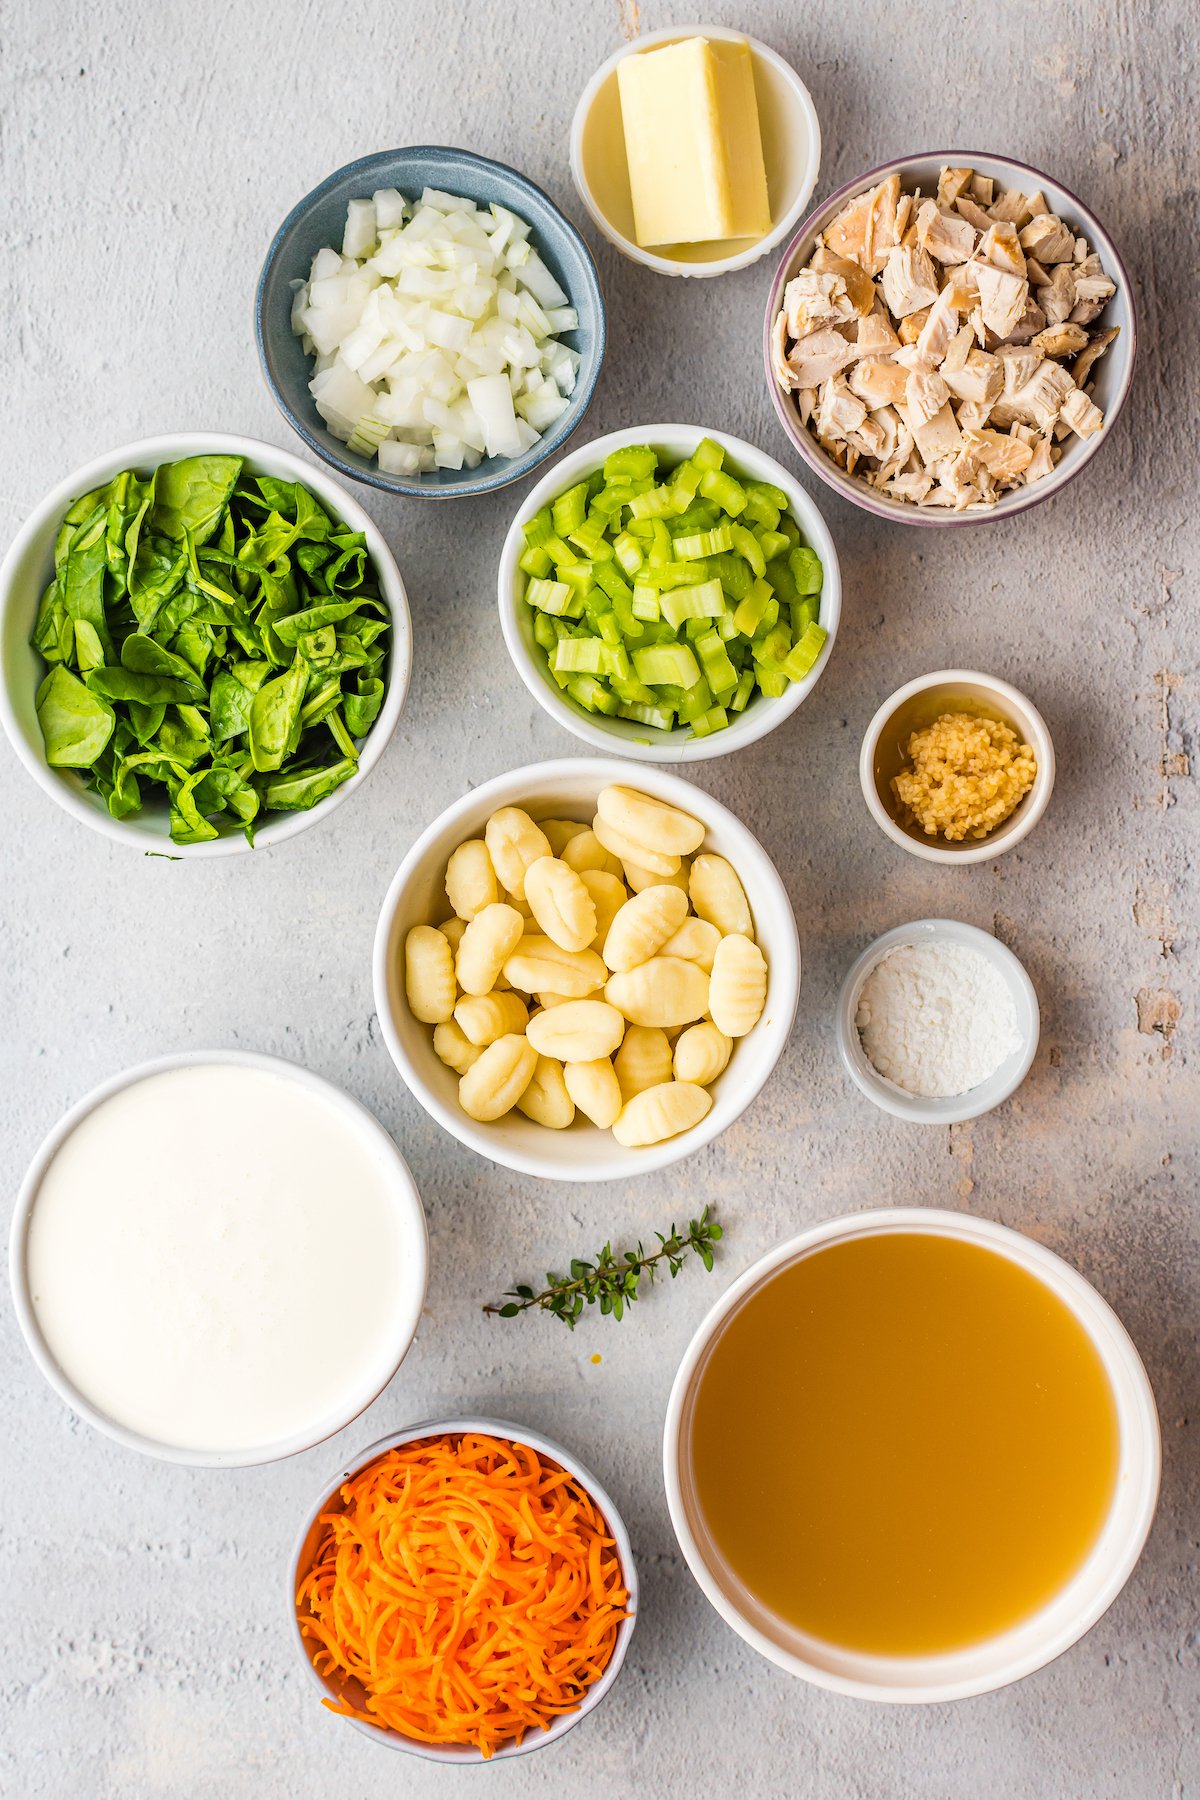 Ingredients for Olive Garden chicken gnocchi soup.